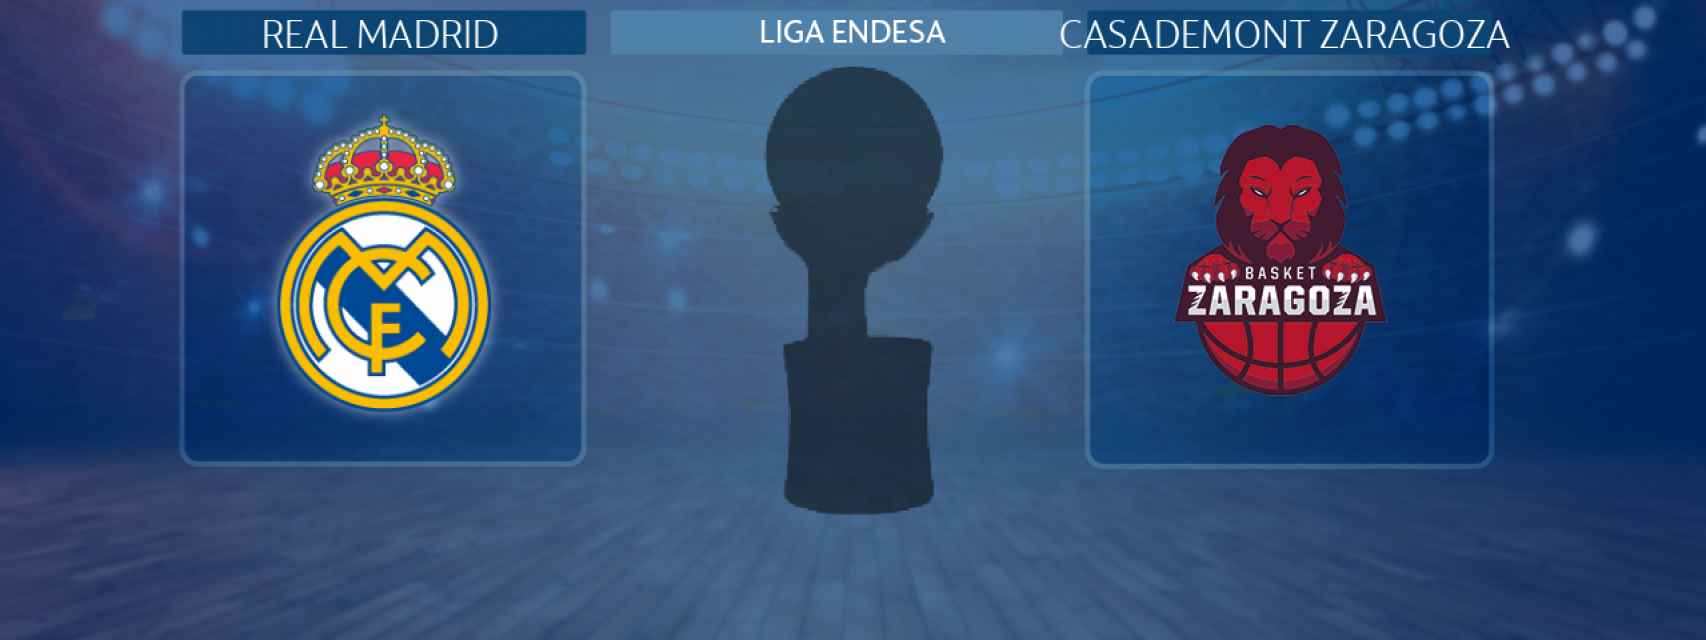 Real Madrid - Casademont Zaragoza, partido de la Liga Endesa